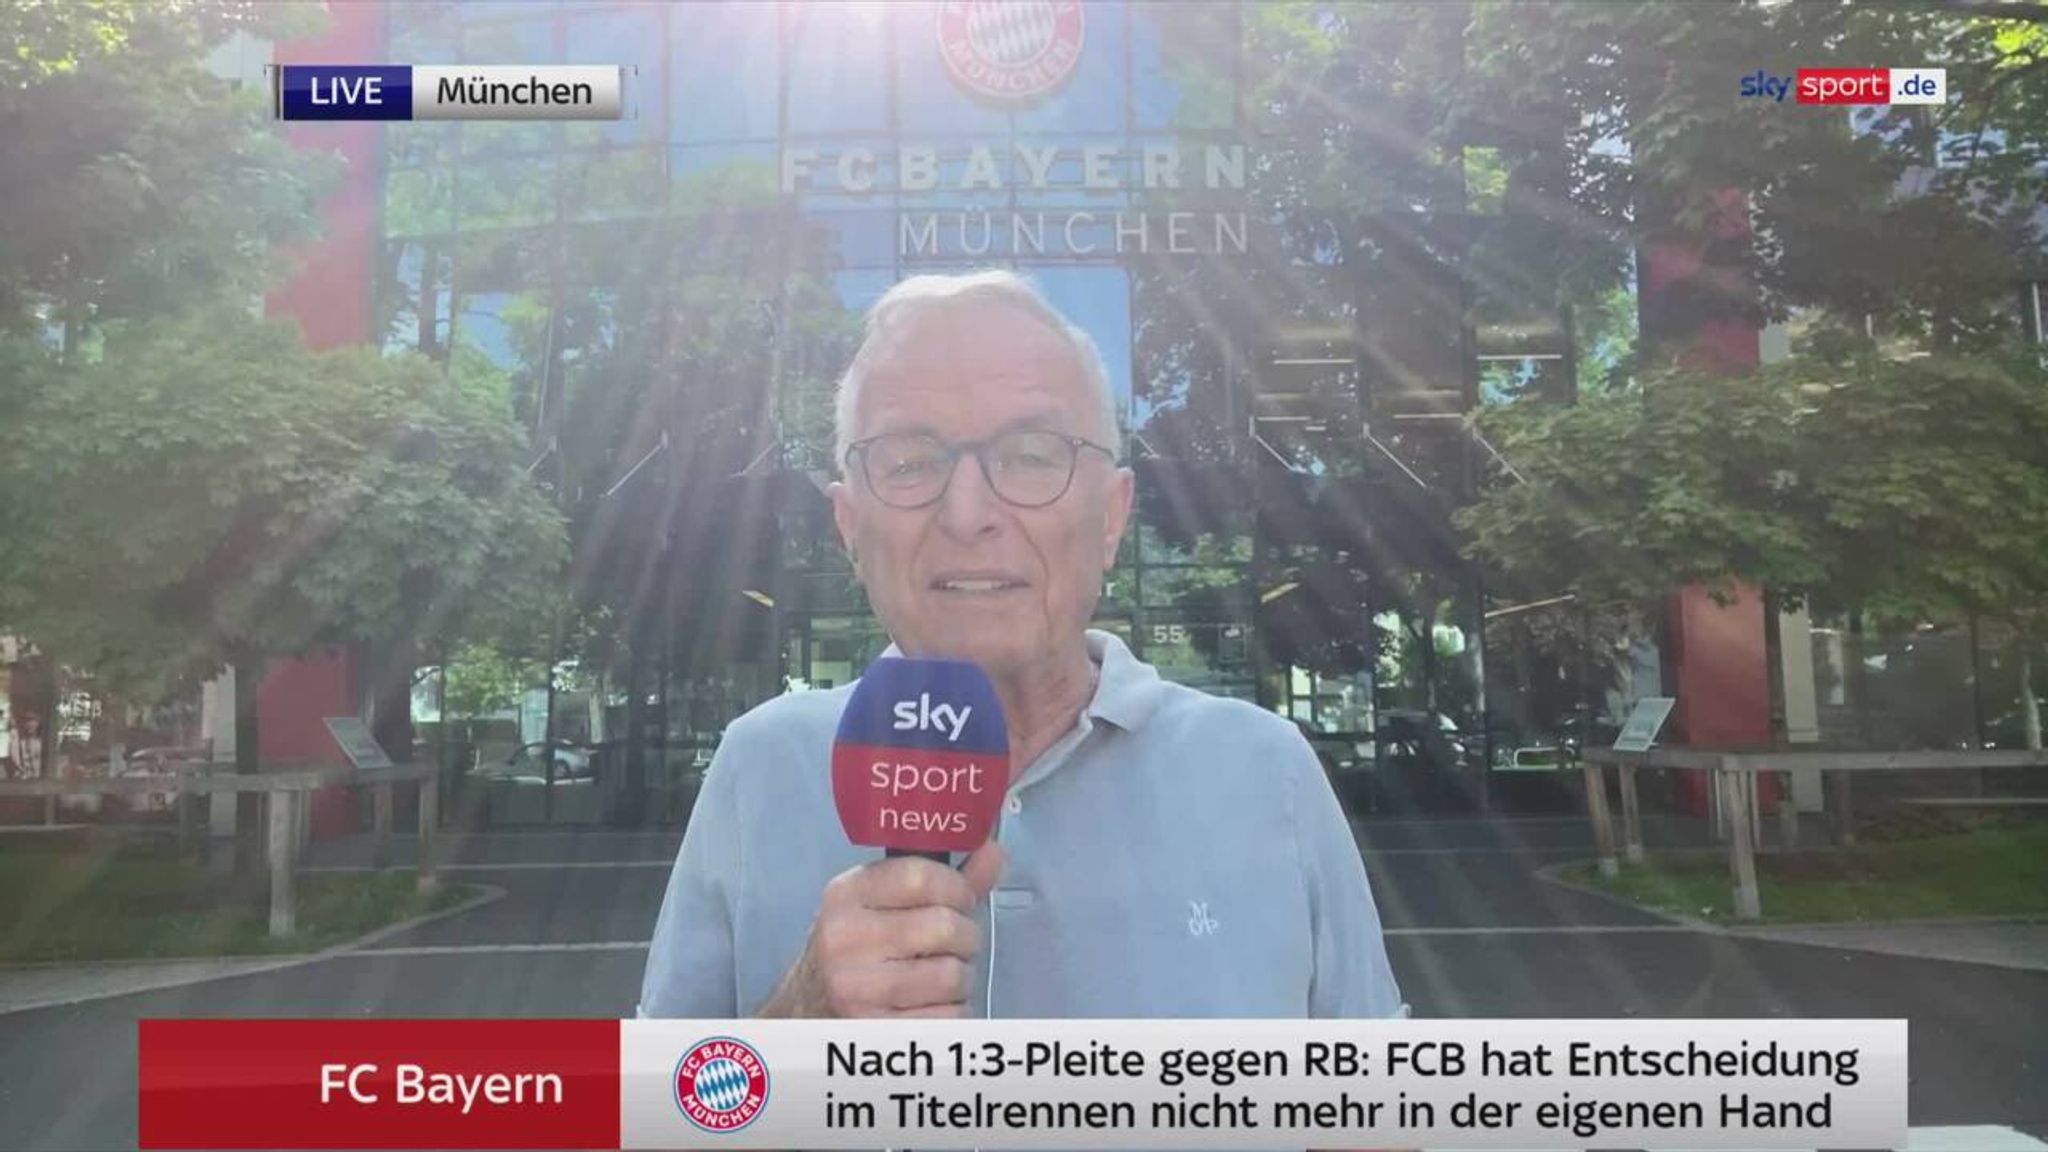 FC Bayern Bindet der FCB eine Vereinslegende ein? Fußball News Sky Sport